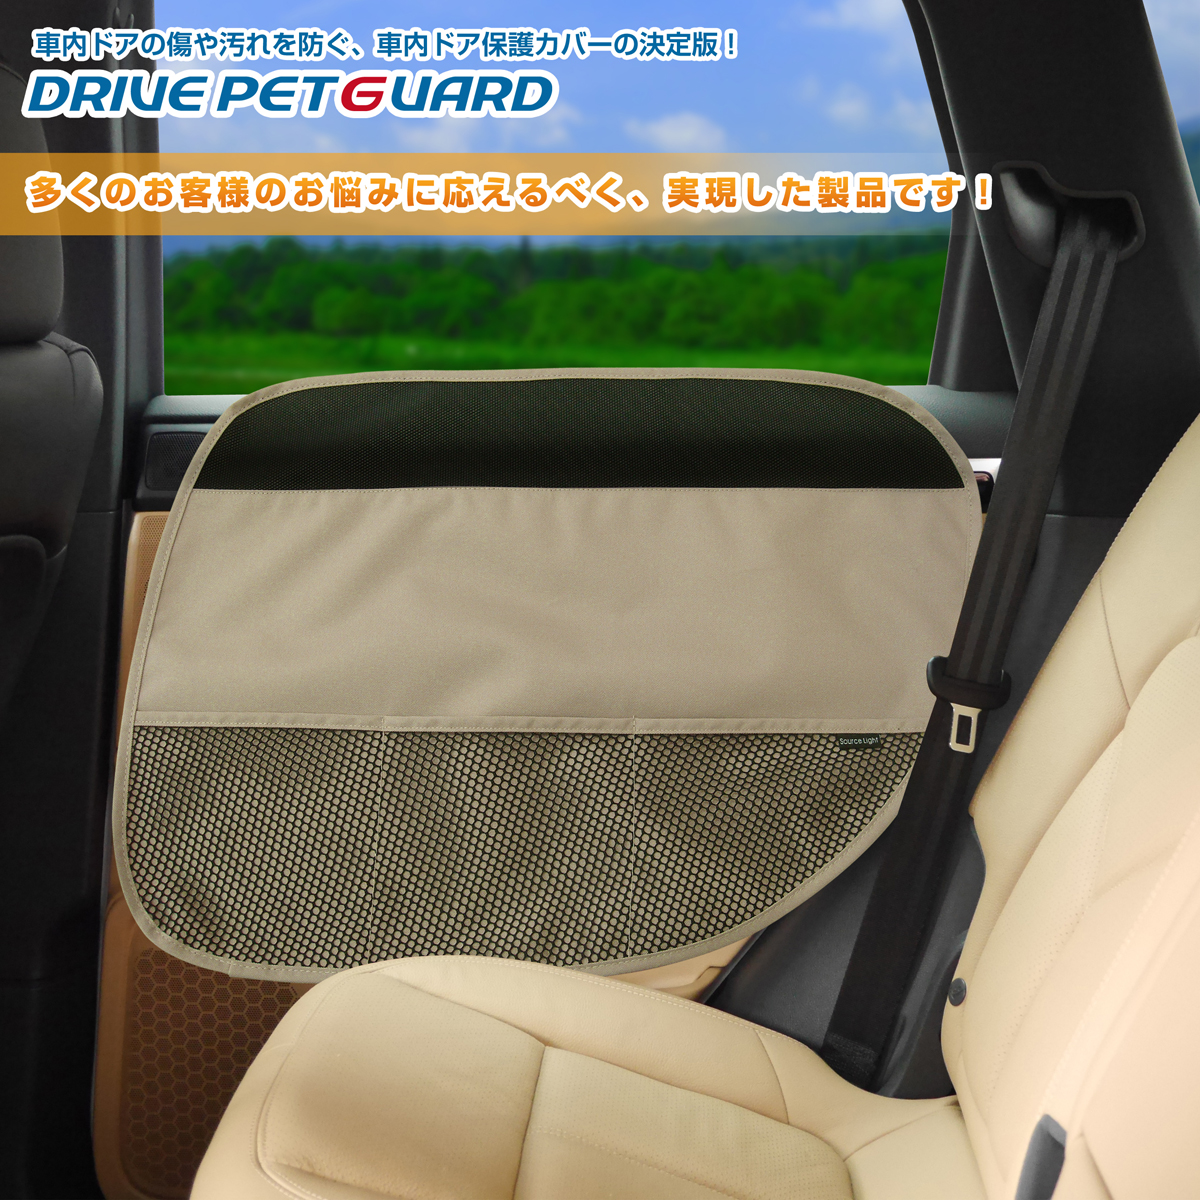 無料車内ドアを爪傷(擦り傷)や汚れから強力に防ぐドアカバー！ DRIVE PET GUARD ドライブペットガード [2枚組] 犬用・猫用